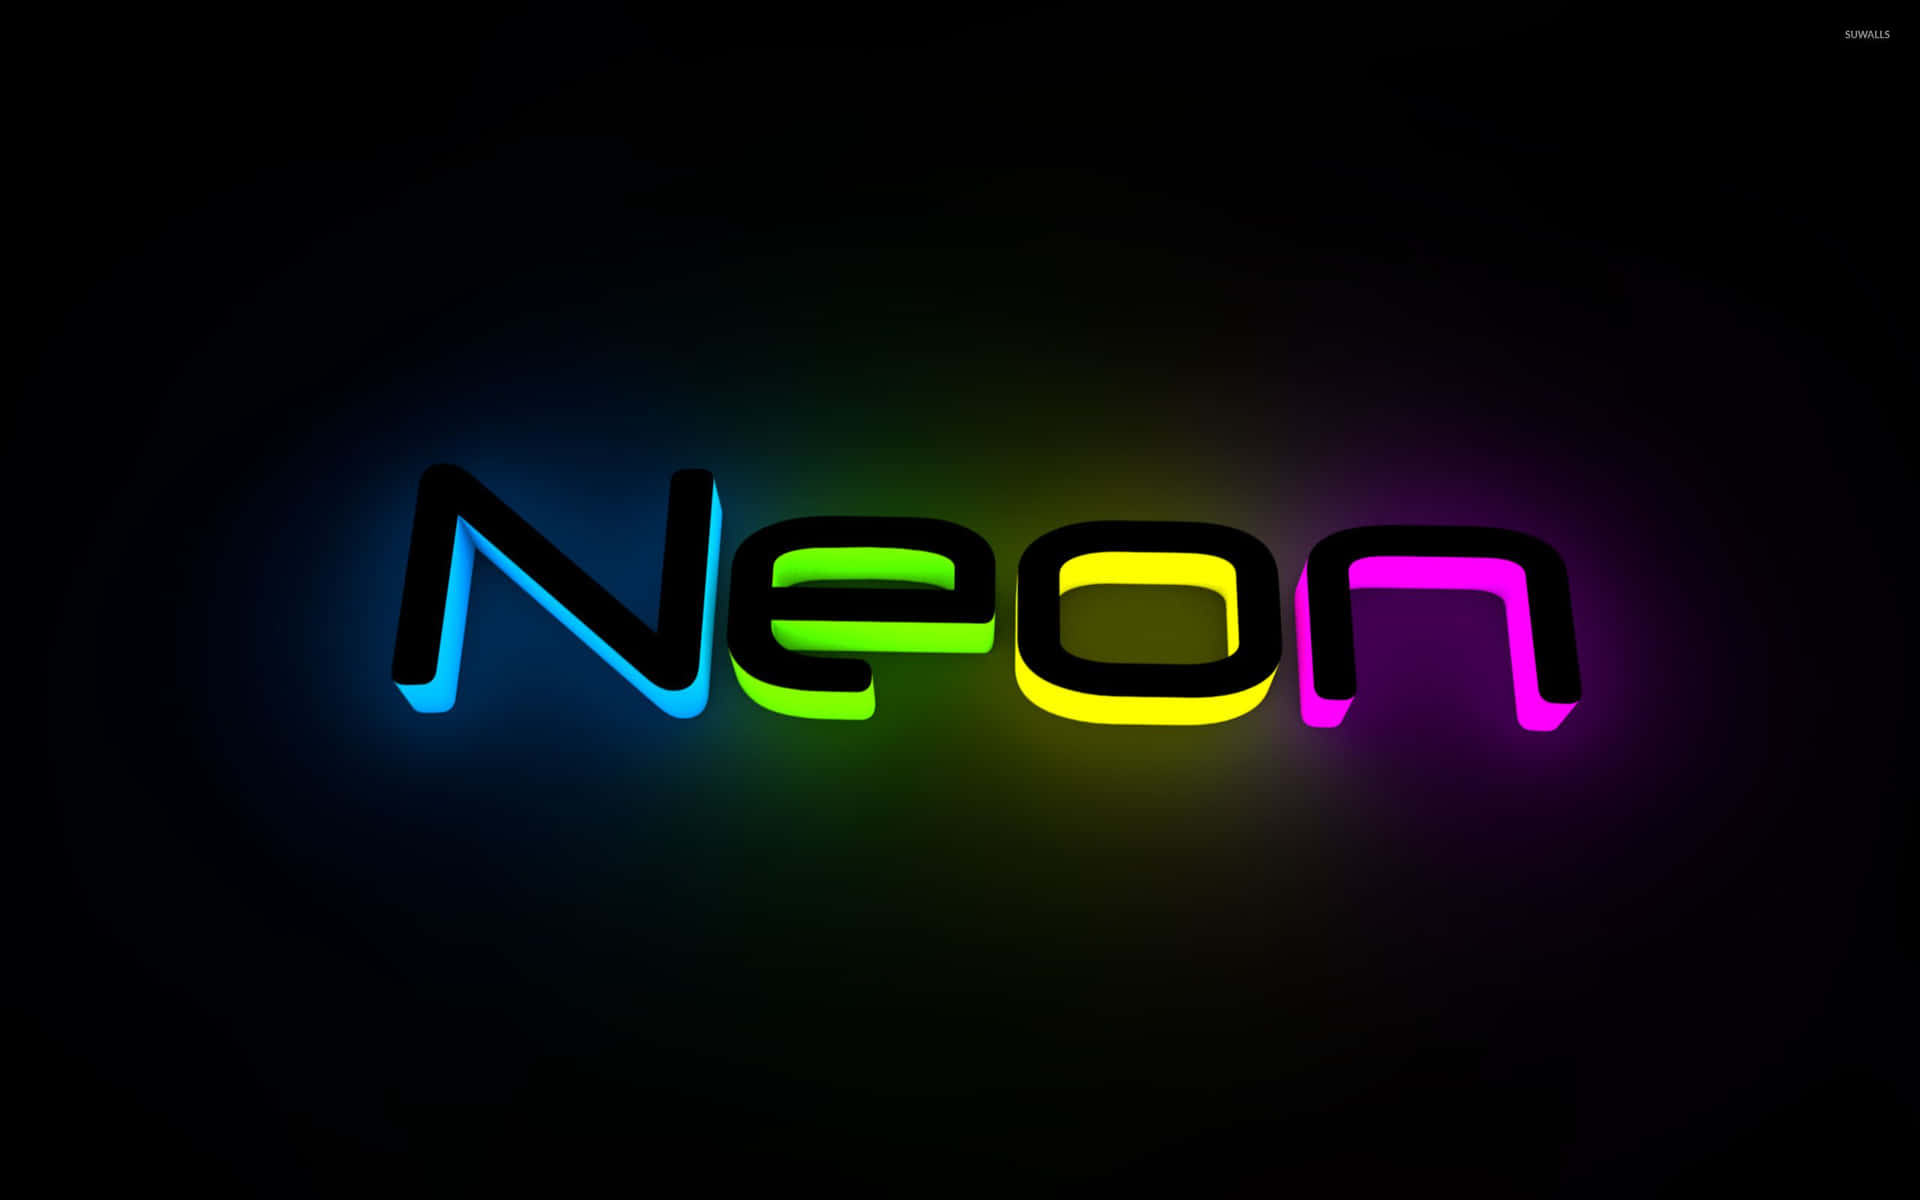 Neonlys kan give et æstetisk udtryk til enhver miljø. Wallpaper